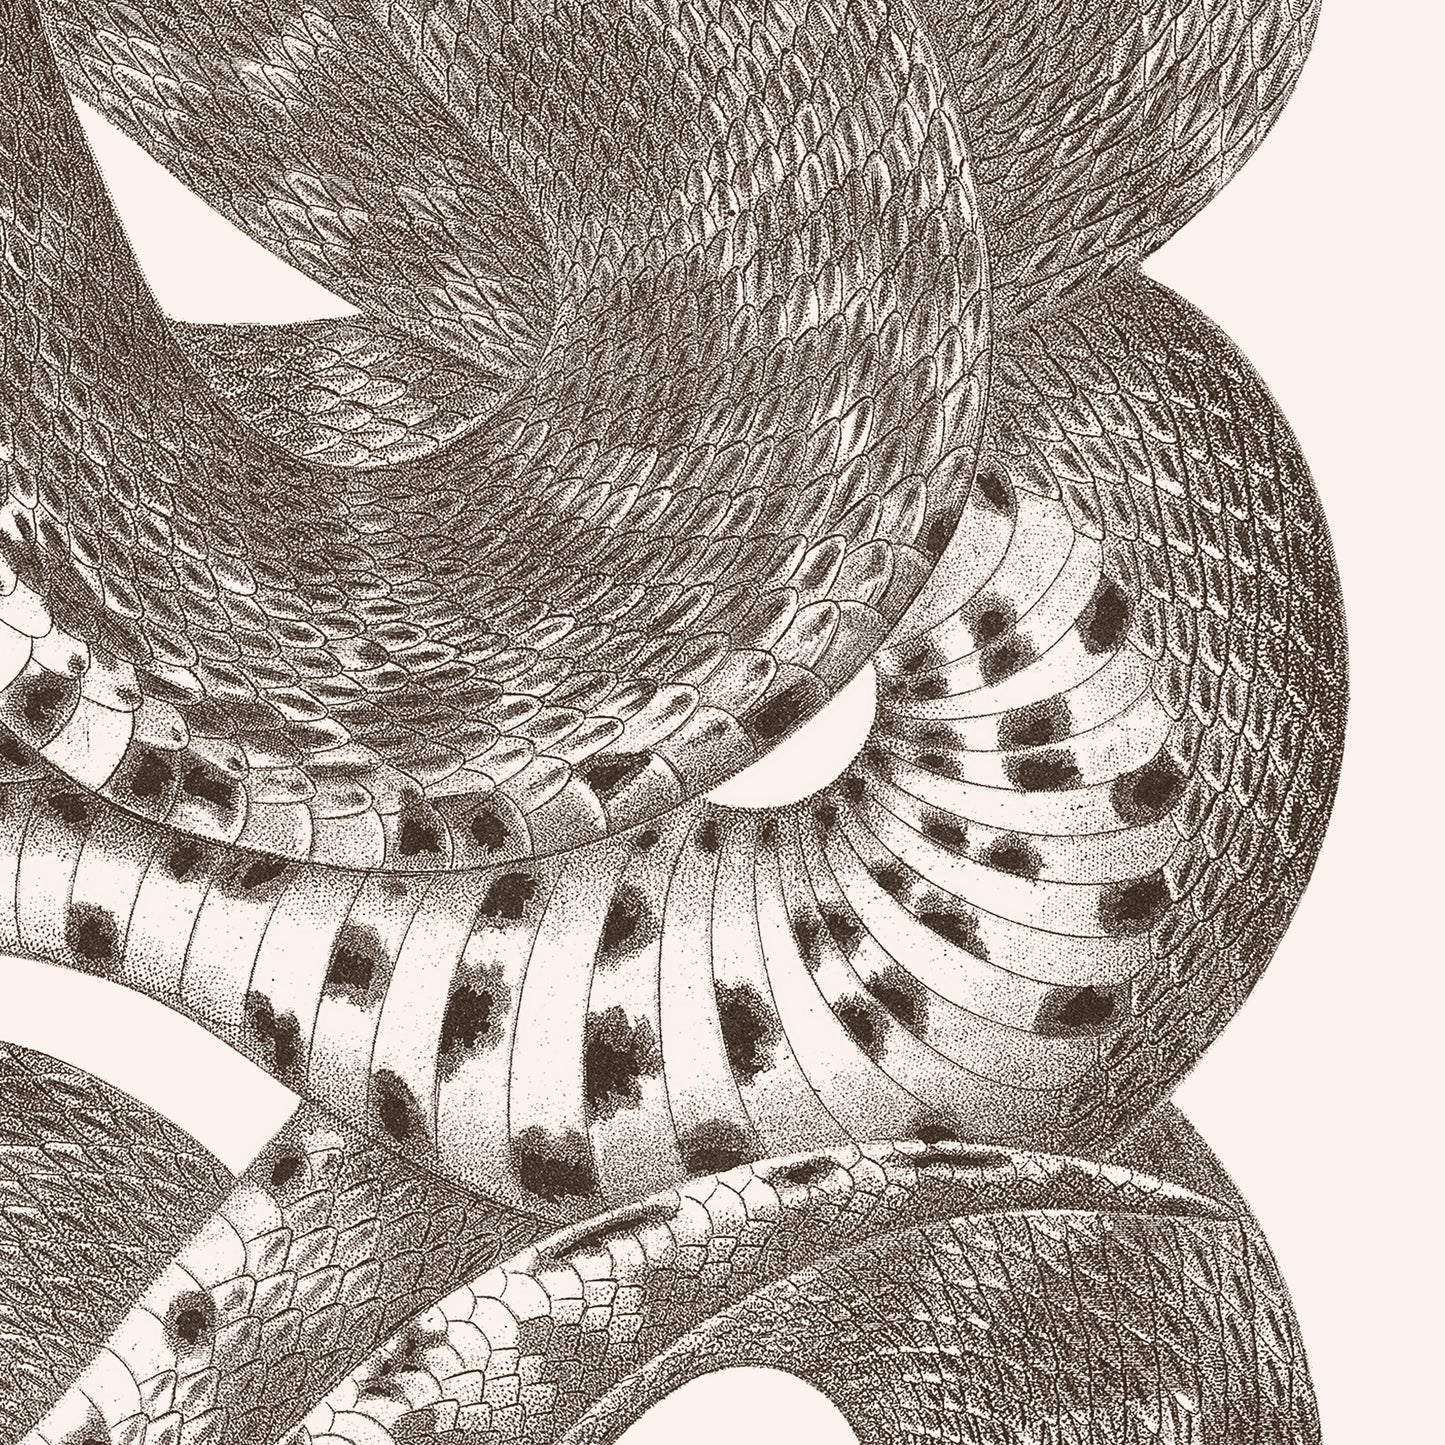 Affiche : Serpent - Planche XXI